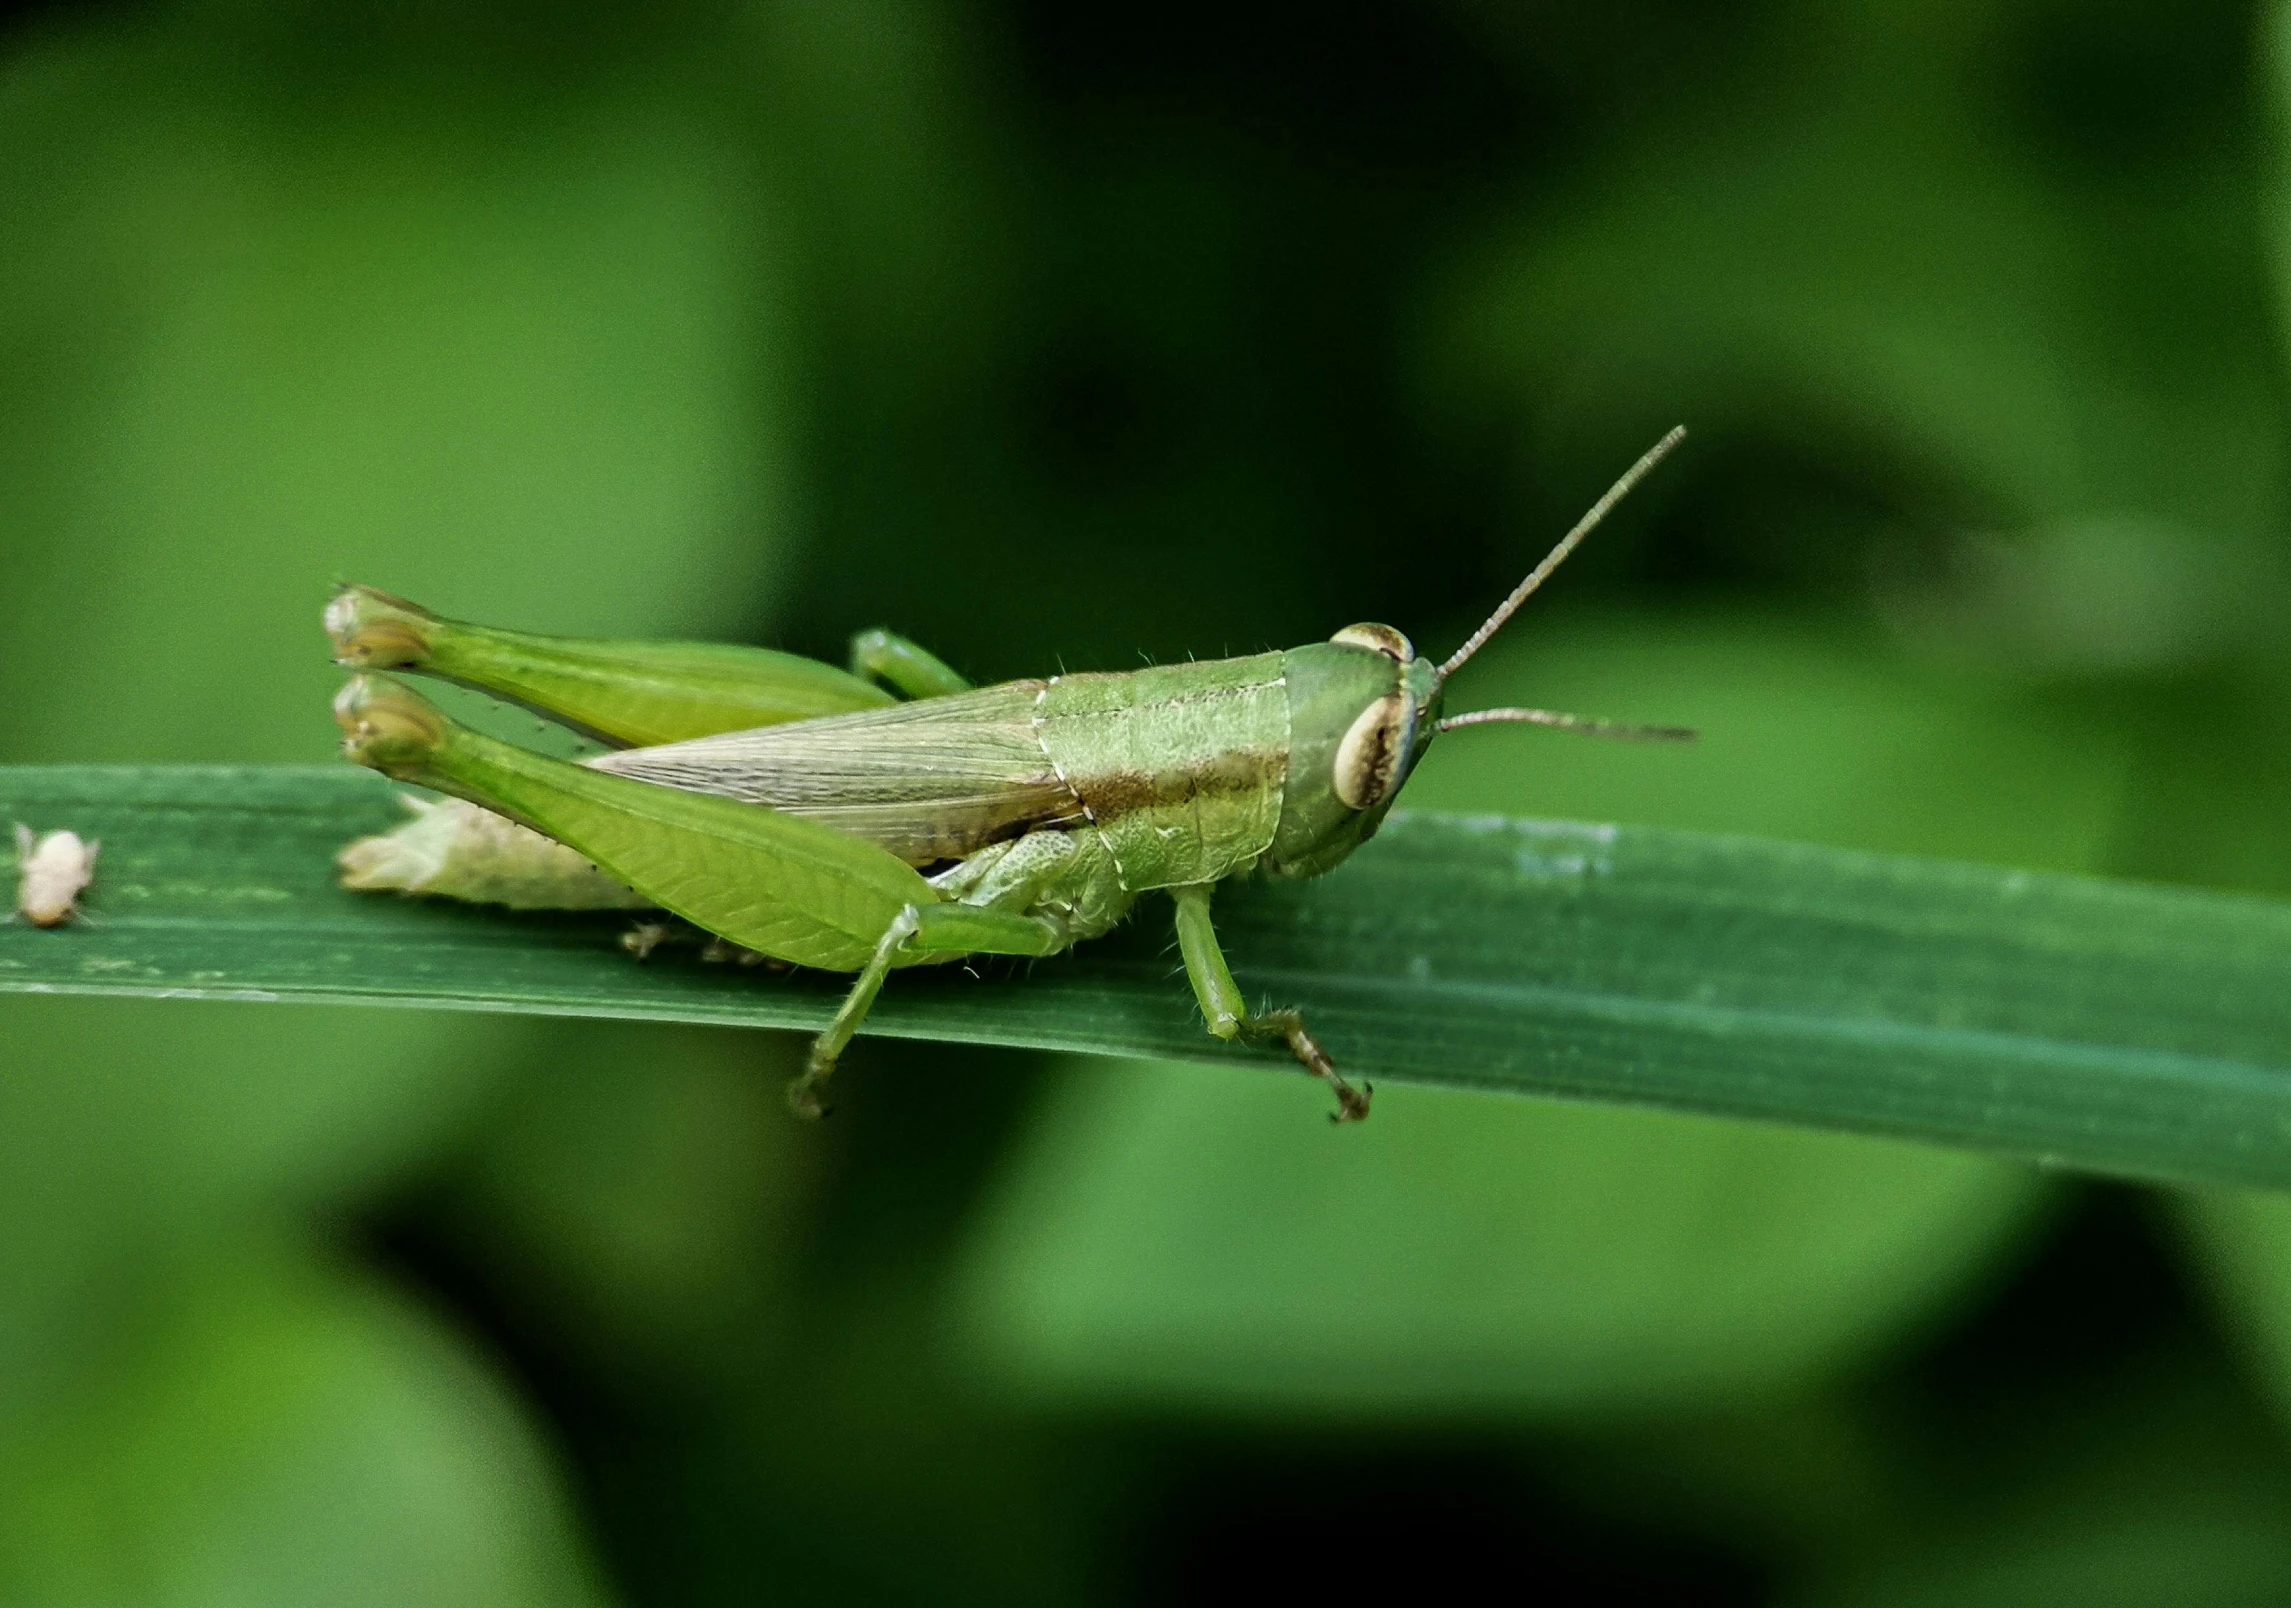 a close up of a grasshopper on a leaf, pexels contest winner, hurufiyya, on a green lawn, farming, greens)